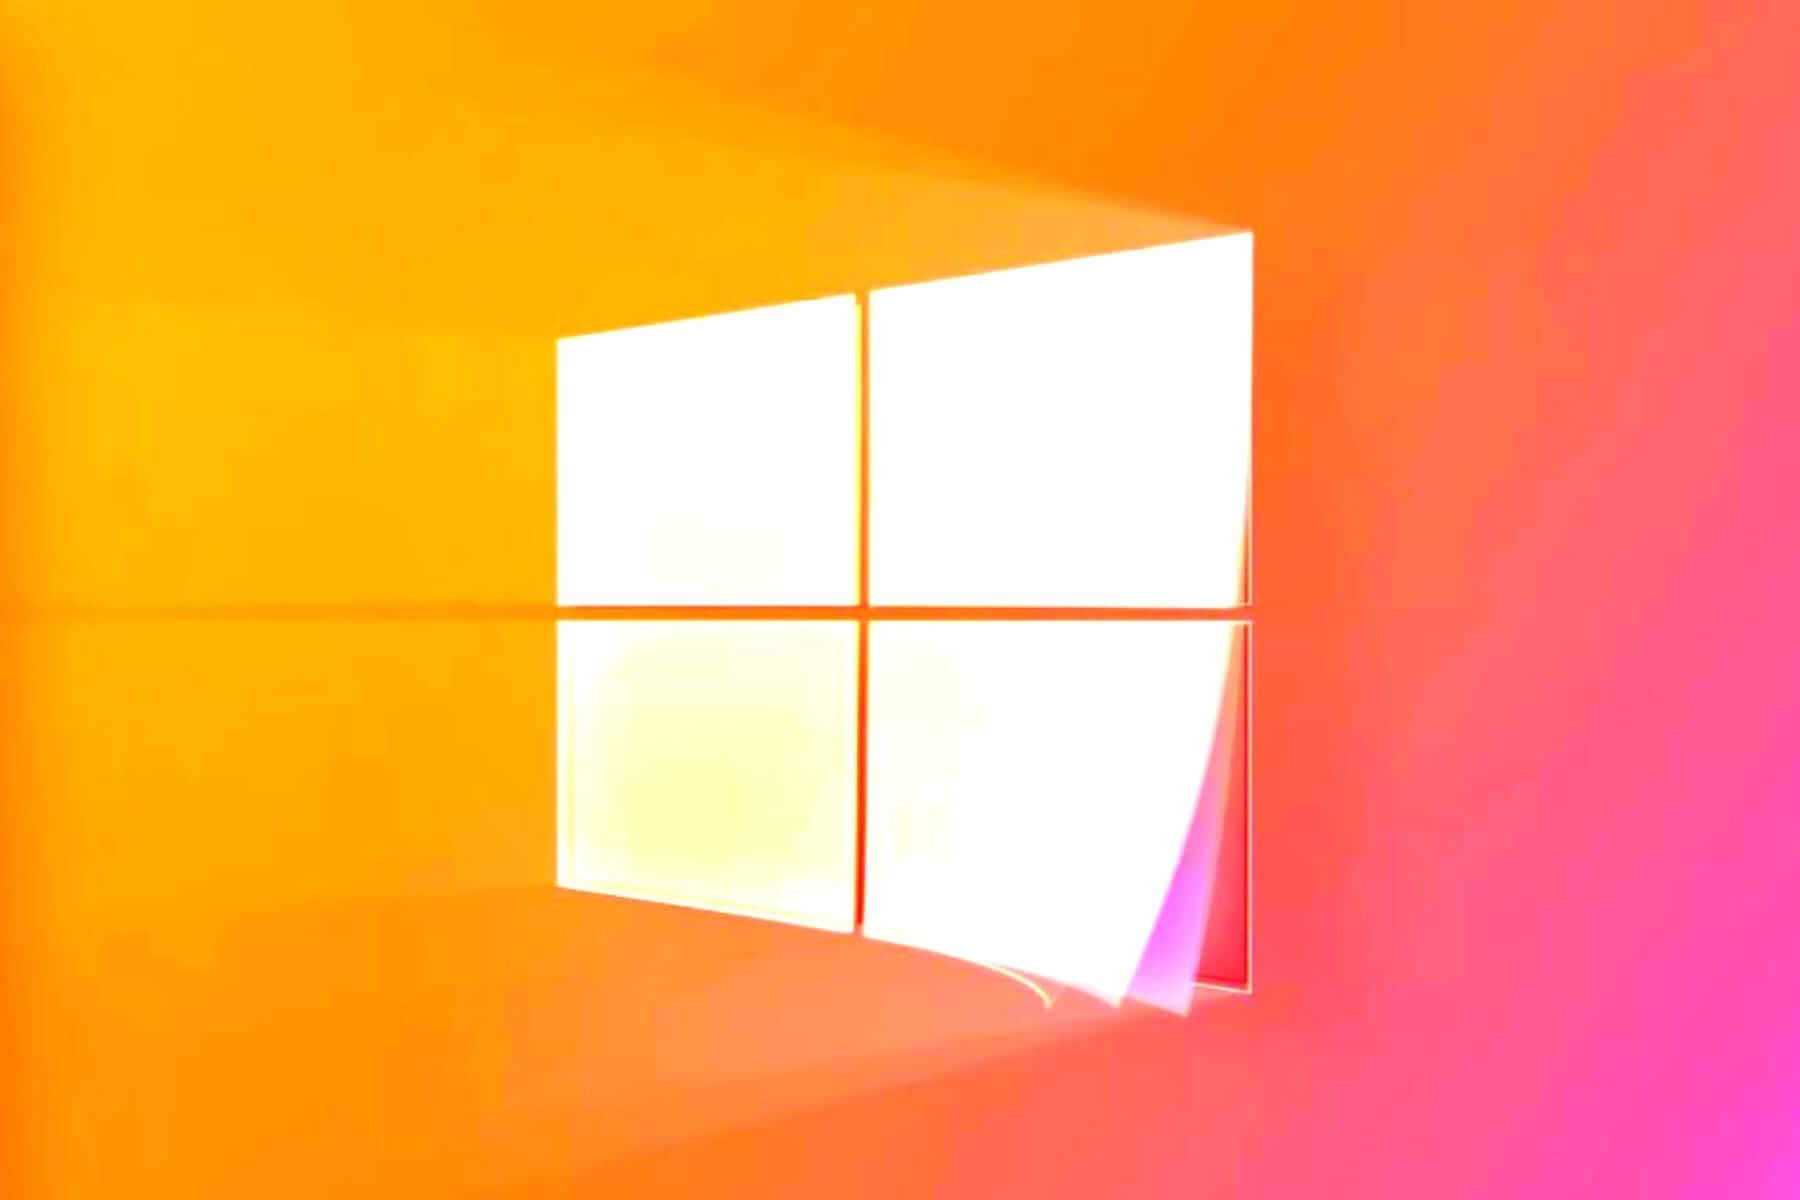 Tạo cảm hứng cho mọi người với hình nền Windows 11 màu cam hồng tuyệt đẹp. Wallpapers.com cung cấp những hình nền sáng tạo, độc đáo để bạn tải về miễn phí và làm mới giao diện máy tính của mình.